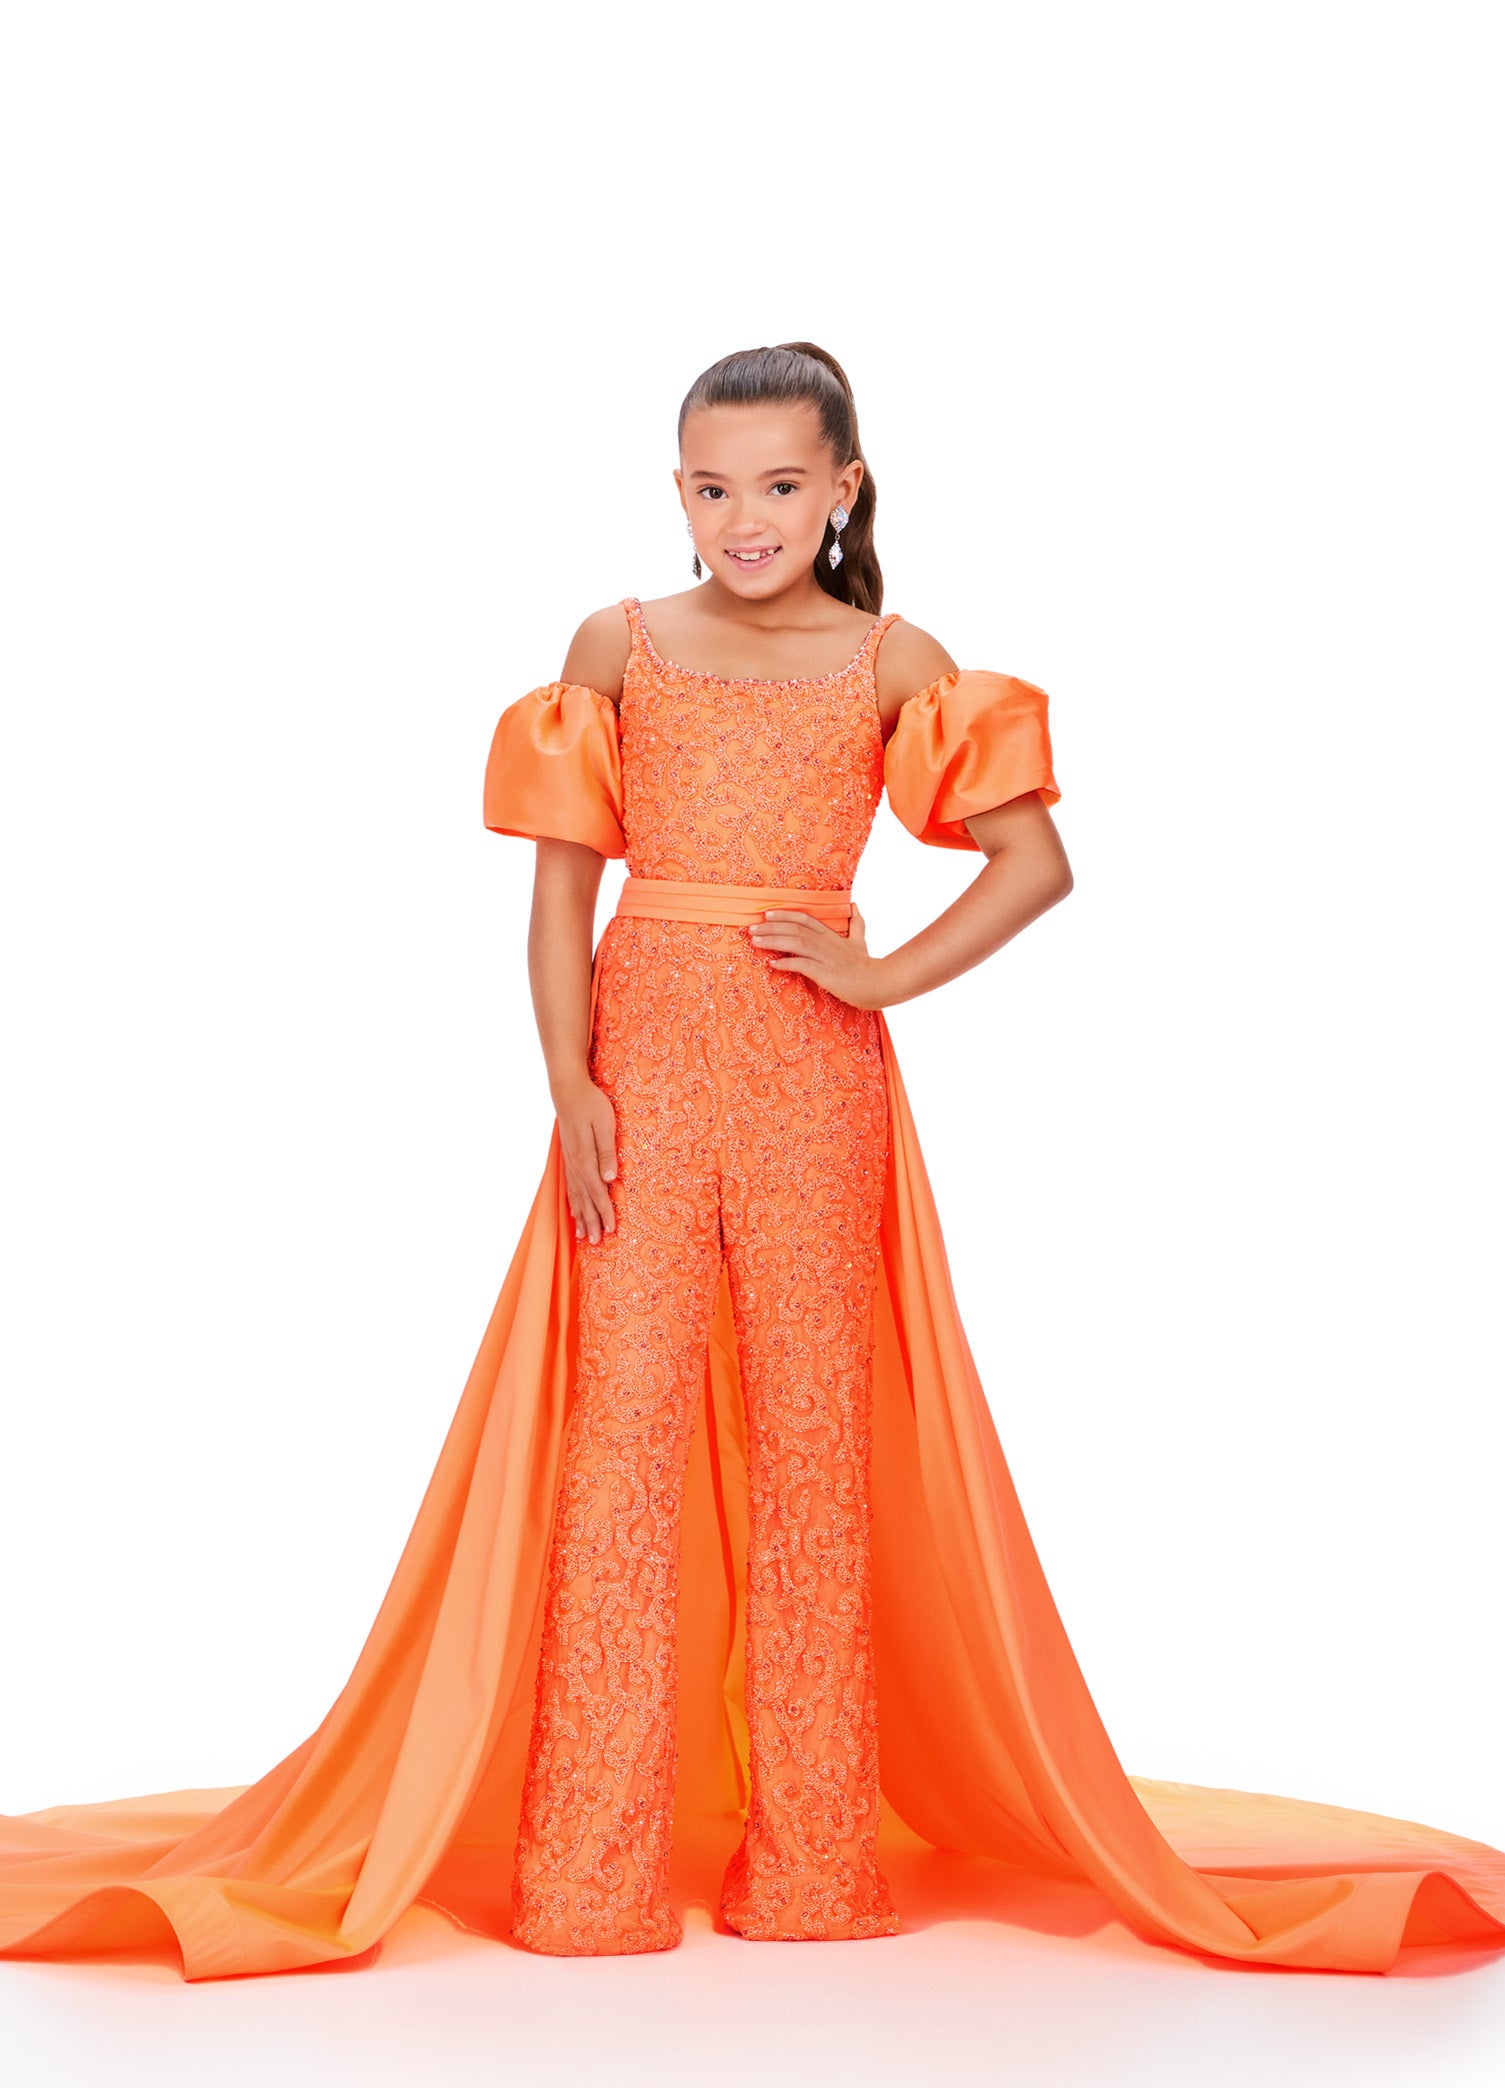 Pageant Formals Orange Jumpsuit Glass 12 Size Ashley – 8253 Slipper Neon Lauren Girls Ruf Kids